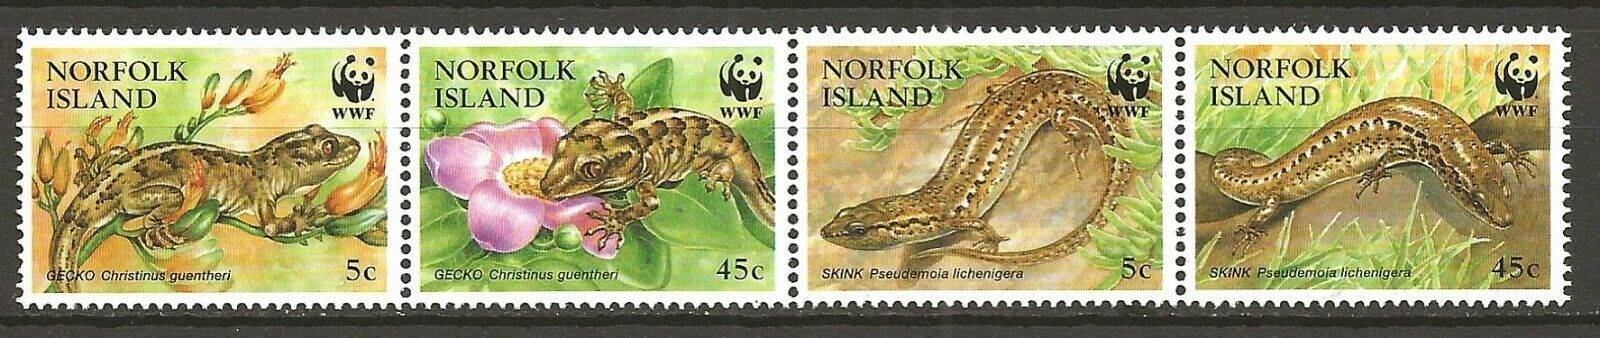 Norfolk 1996 Wwf Wildlife Fauna Animals Tiere Dieren Reptile Geco Skink Set Mnh